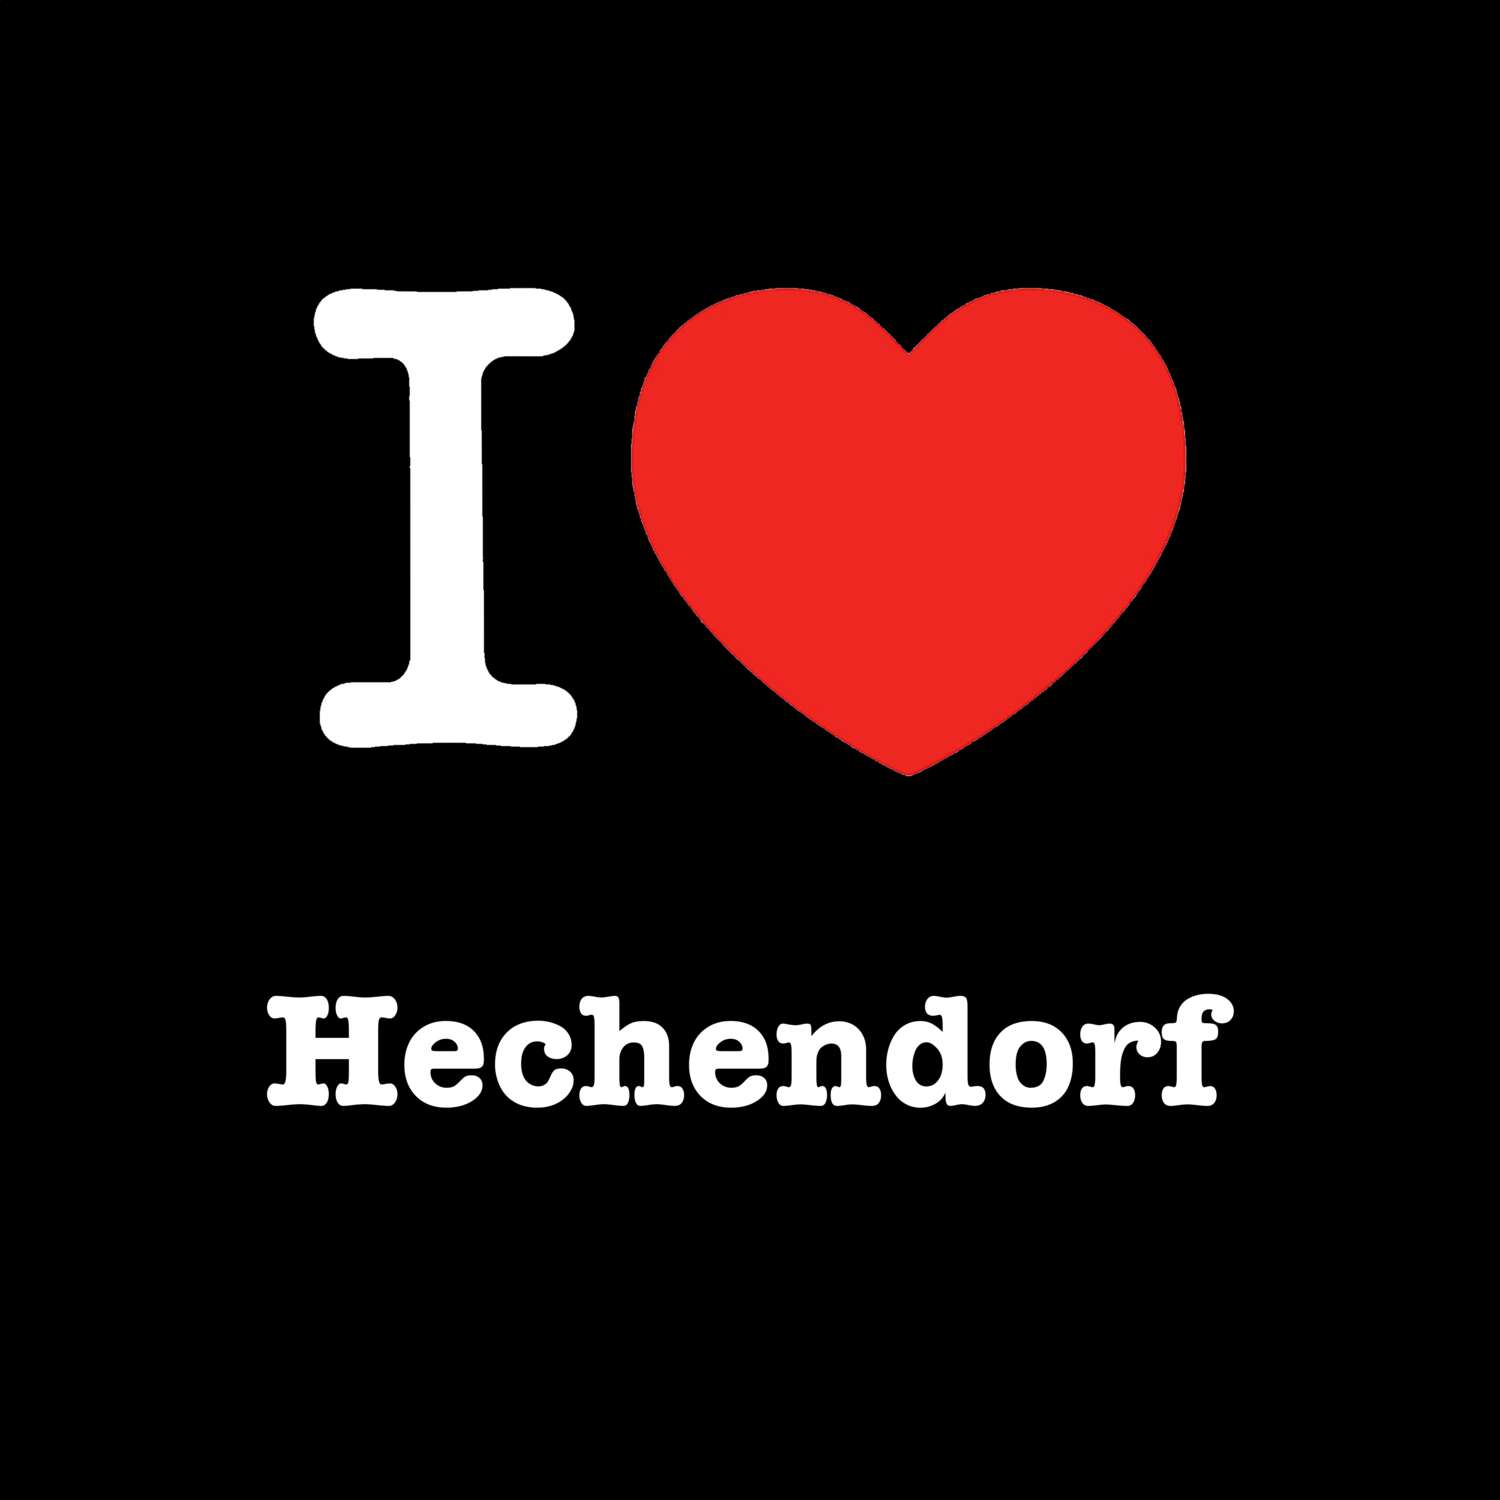 Hechendorf T-Shirt »I love«